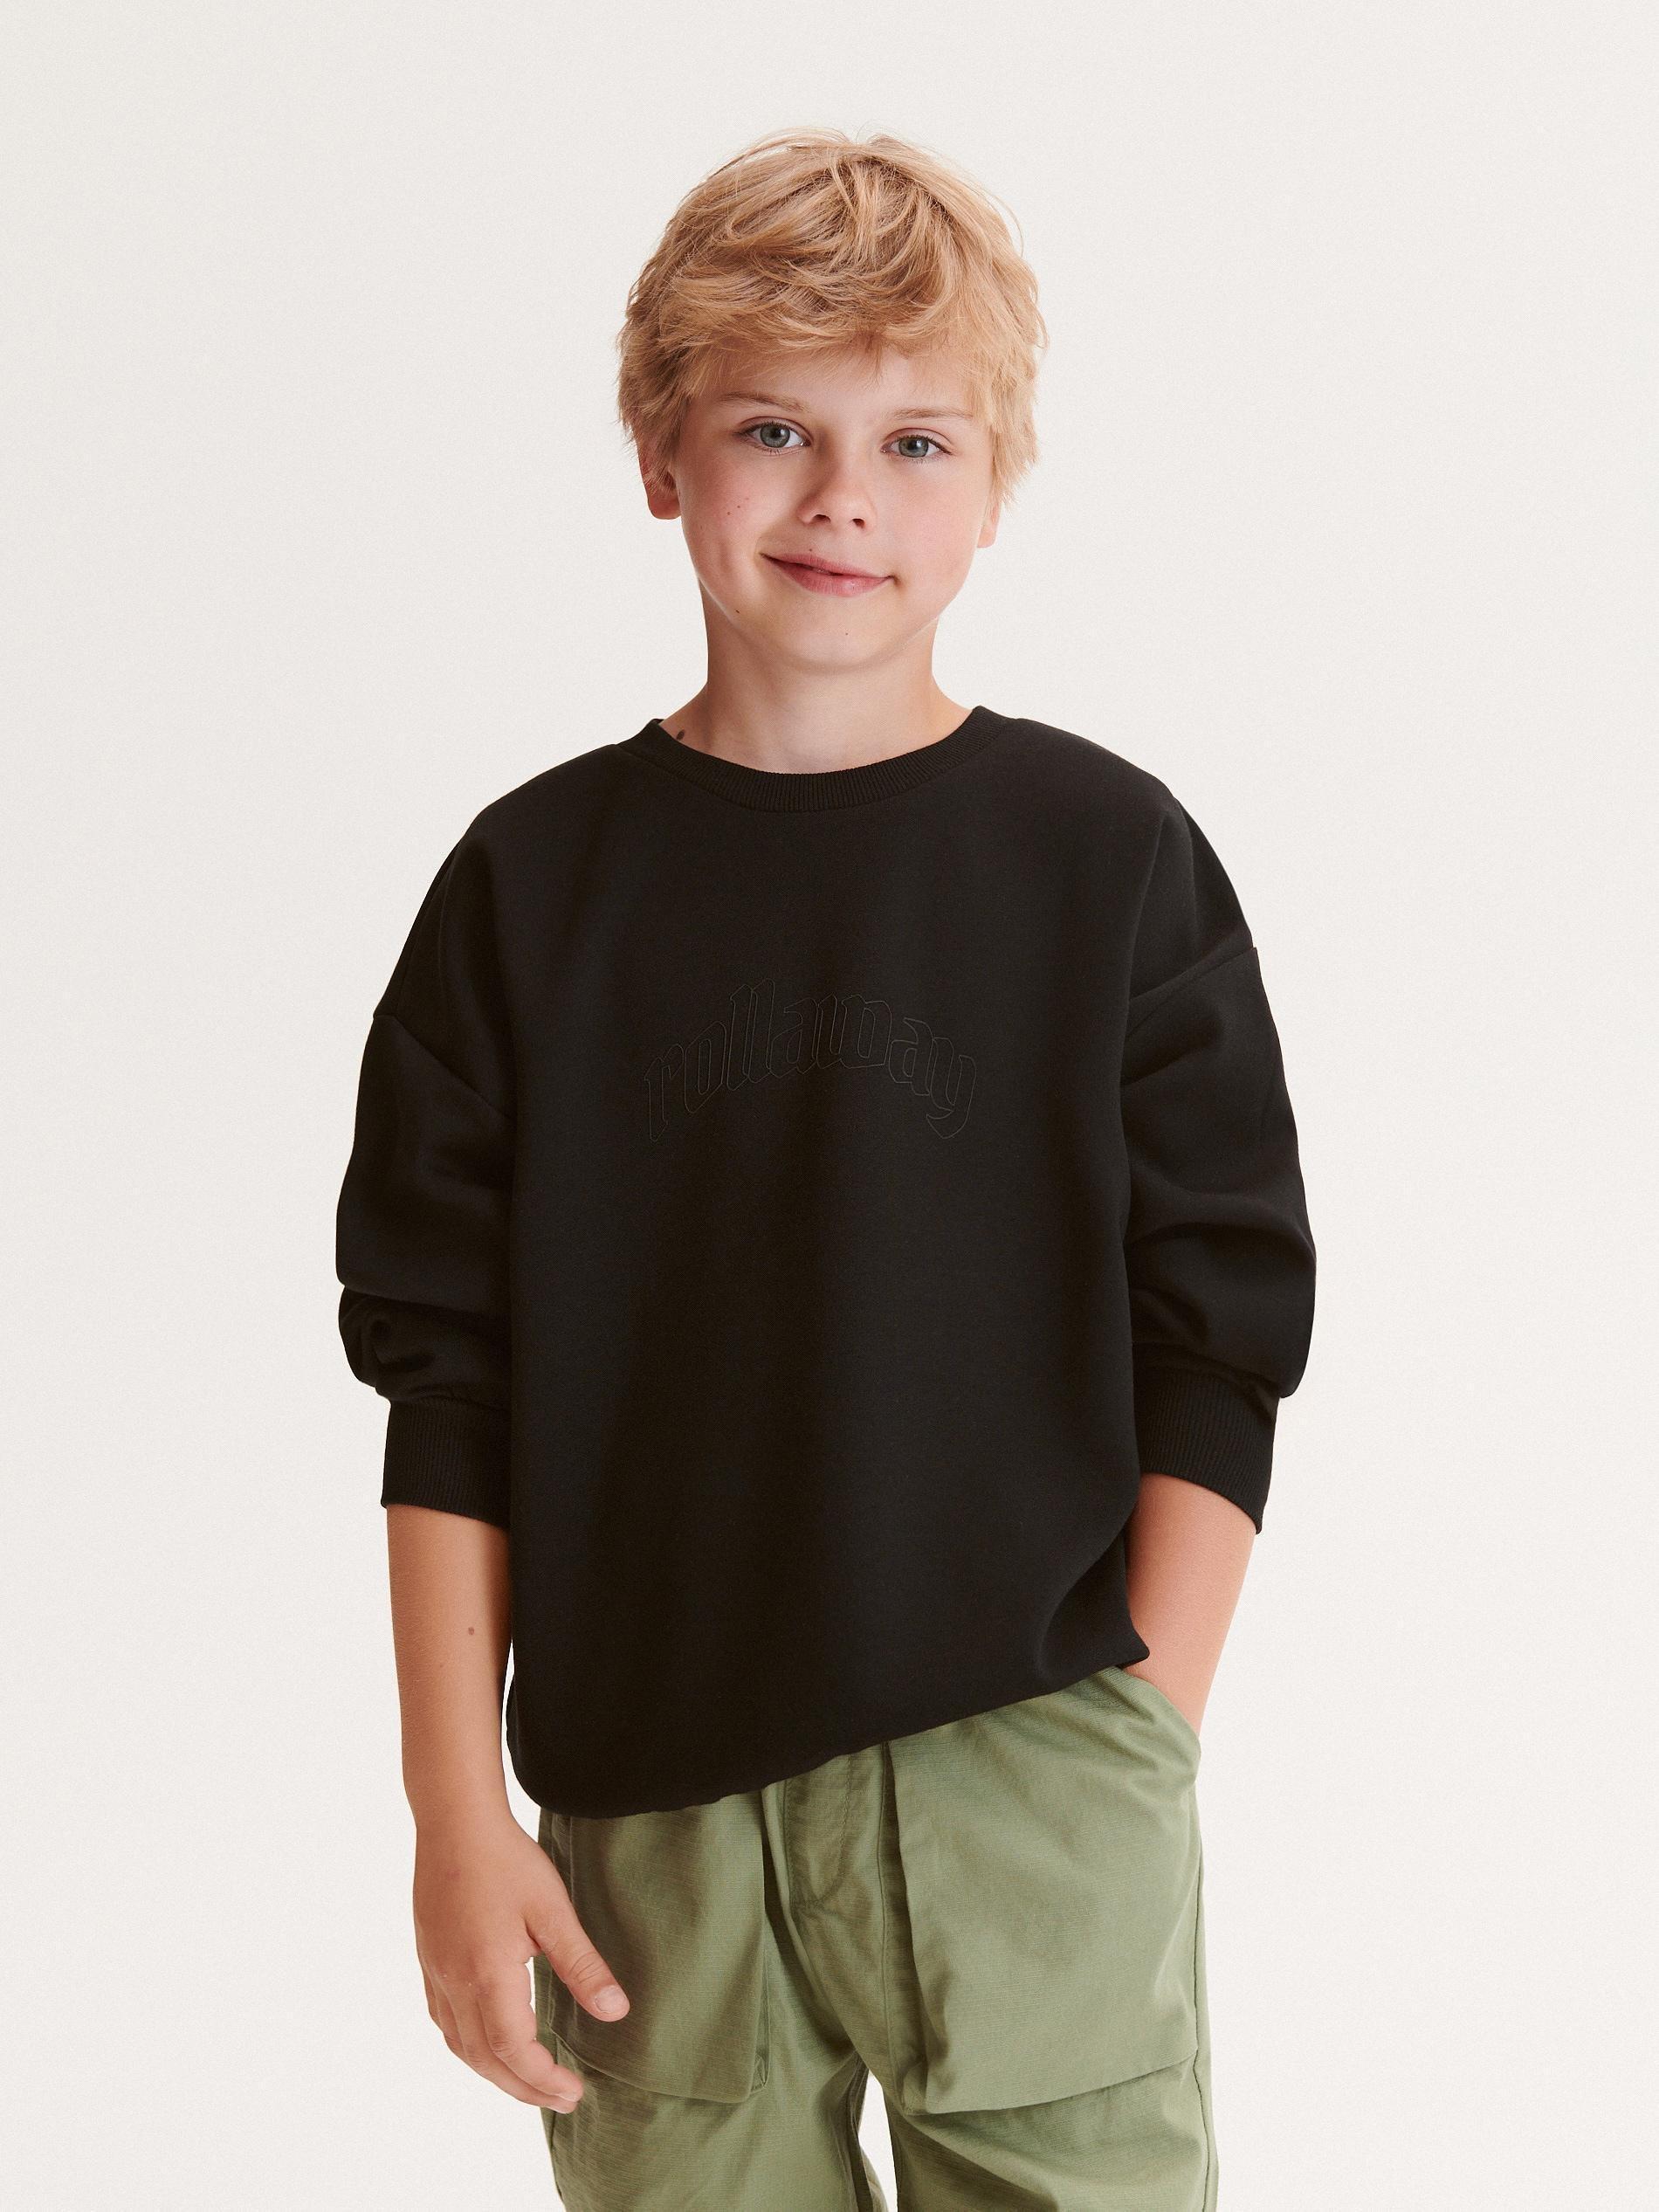 Reserved - Black Printed Sweatshirt, Kids Boys